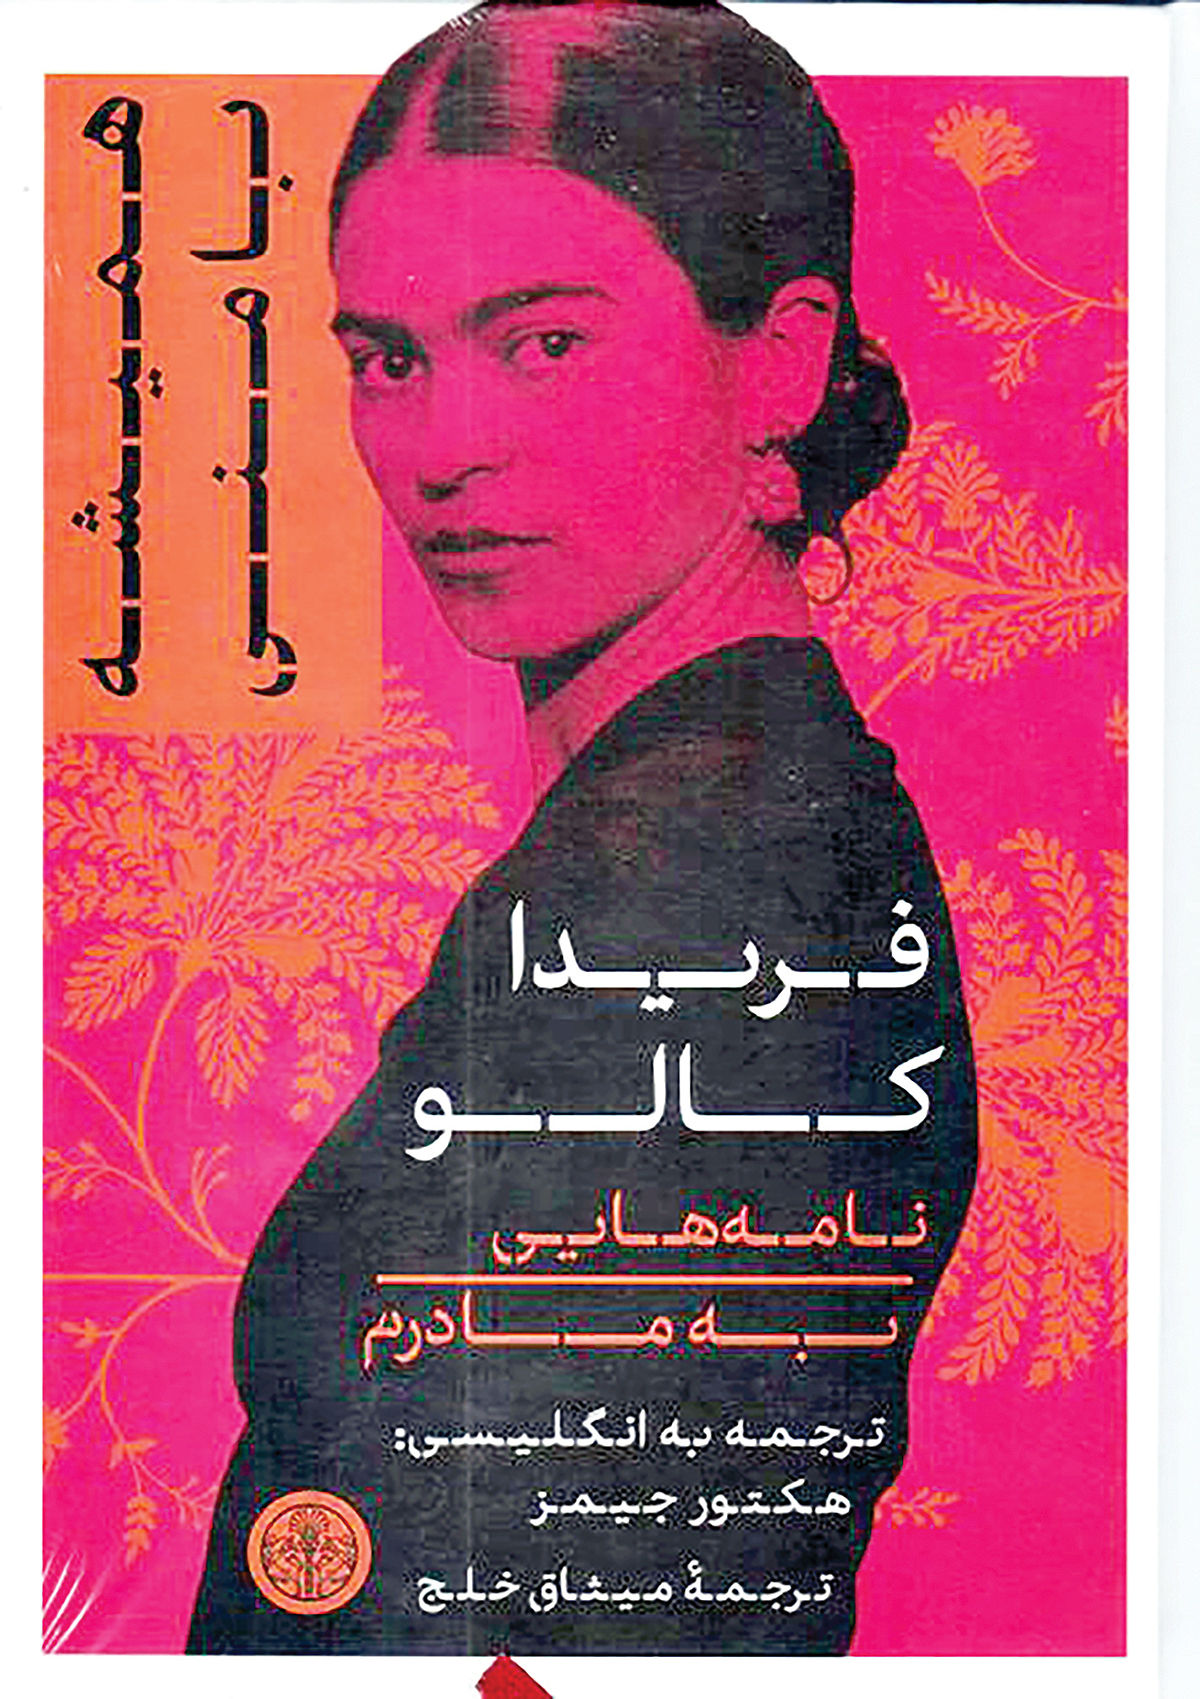 کتابی از فریدا کالو در بازار ایران